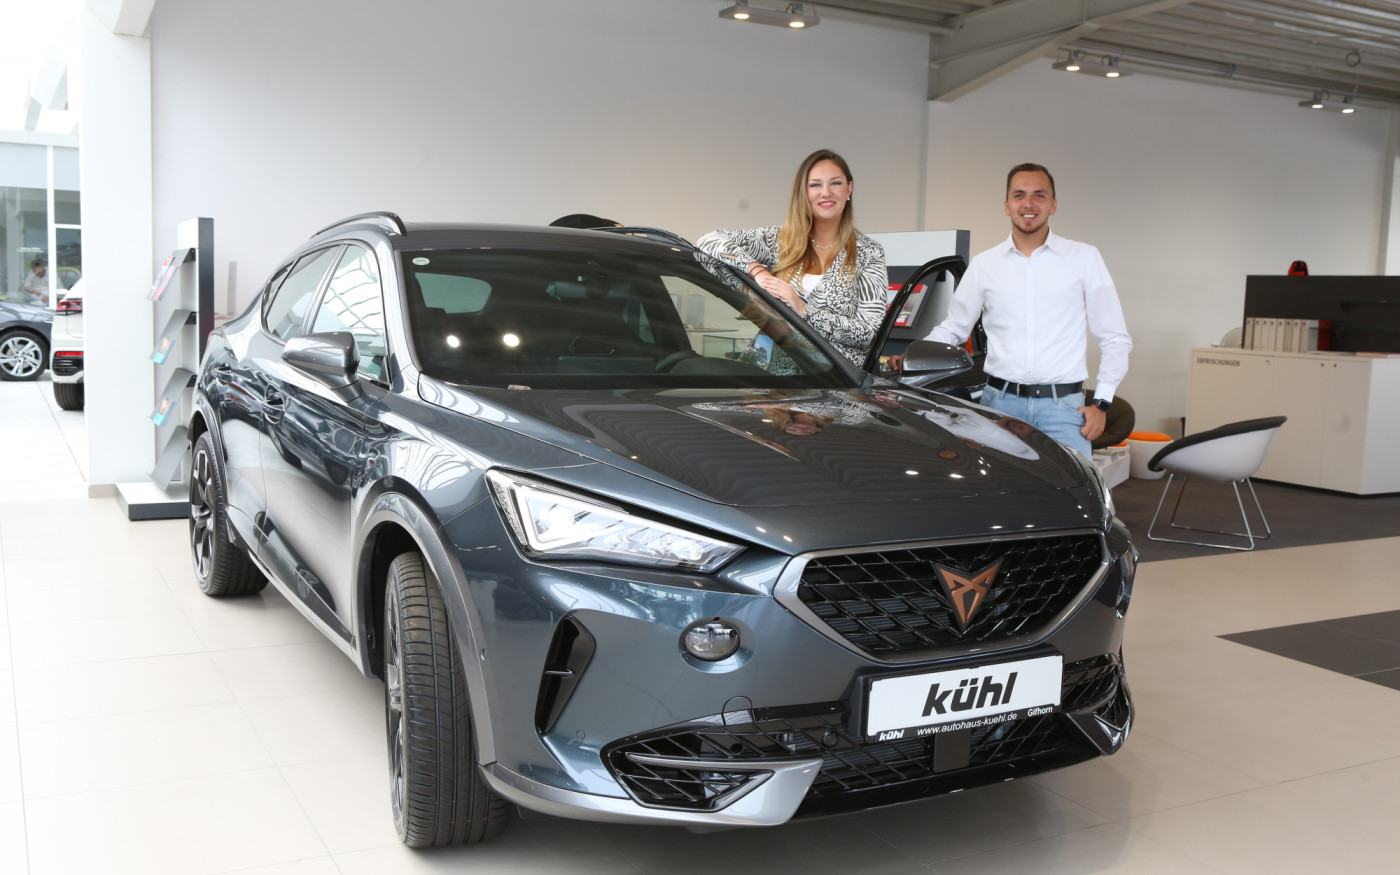 Cupra – jung, dynamisch und auf Erfolgskurs: Im Autohaus Kühl berät Linda Kiefer zum sportlichen SUV Cupra Formentor